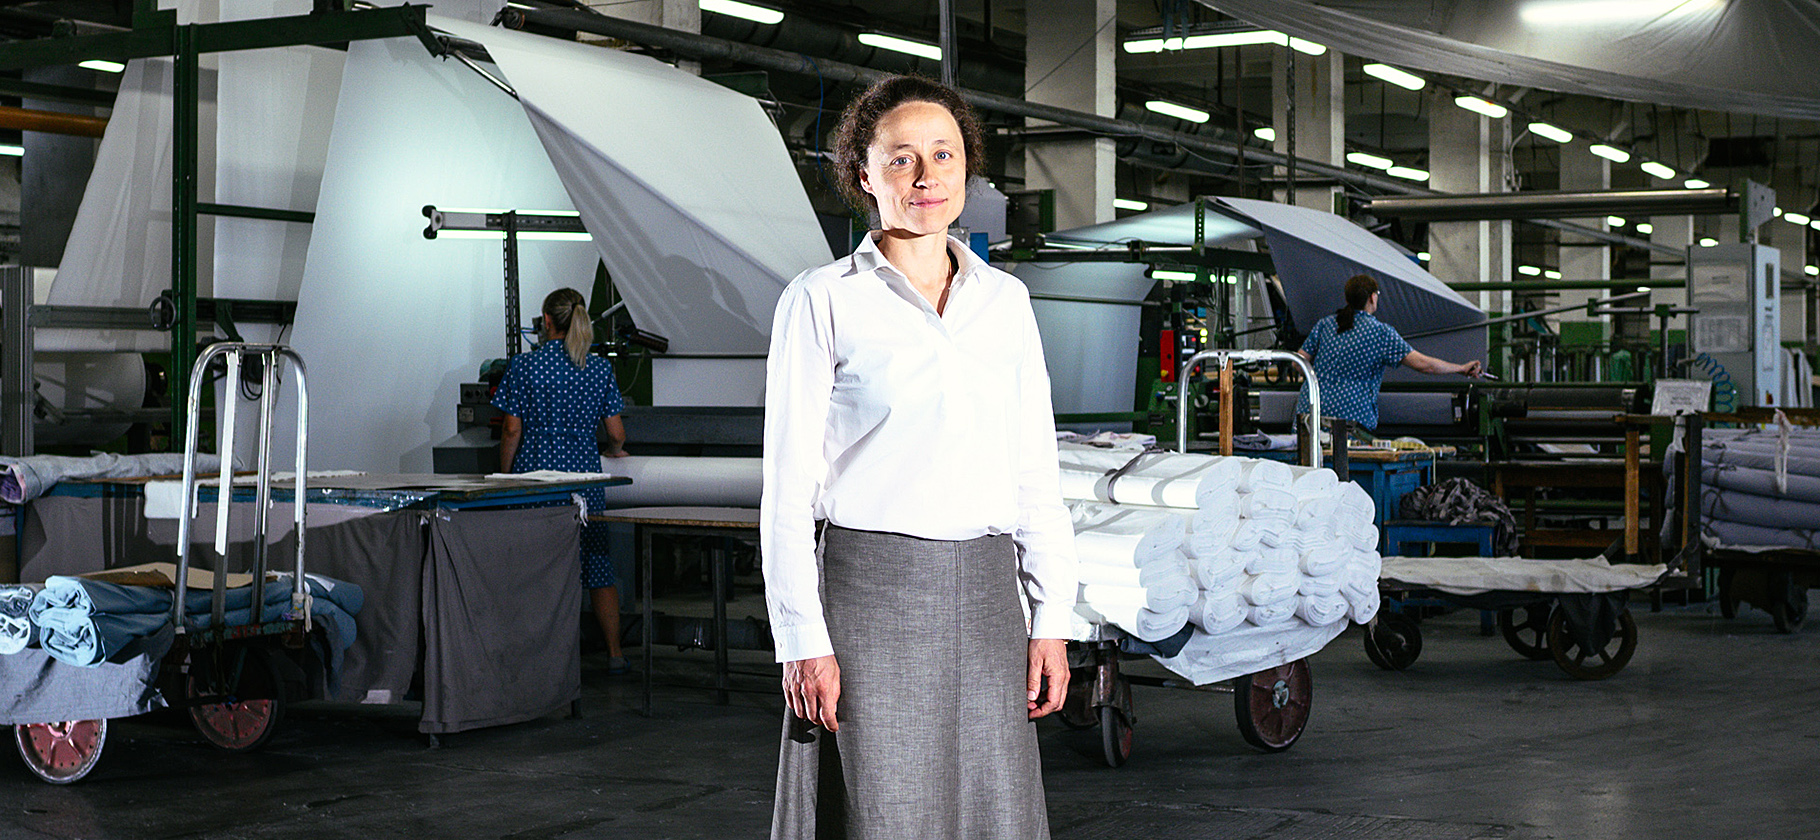 «Рост бомбический»: как живет поставщик белья для «Икеи» после ухода бренда из России